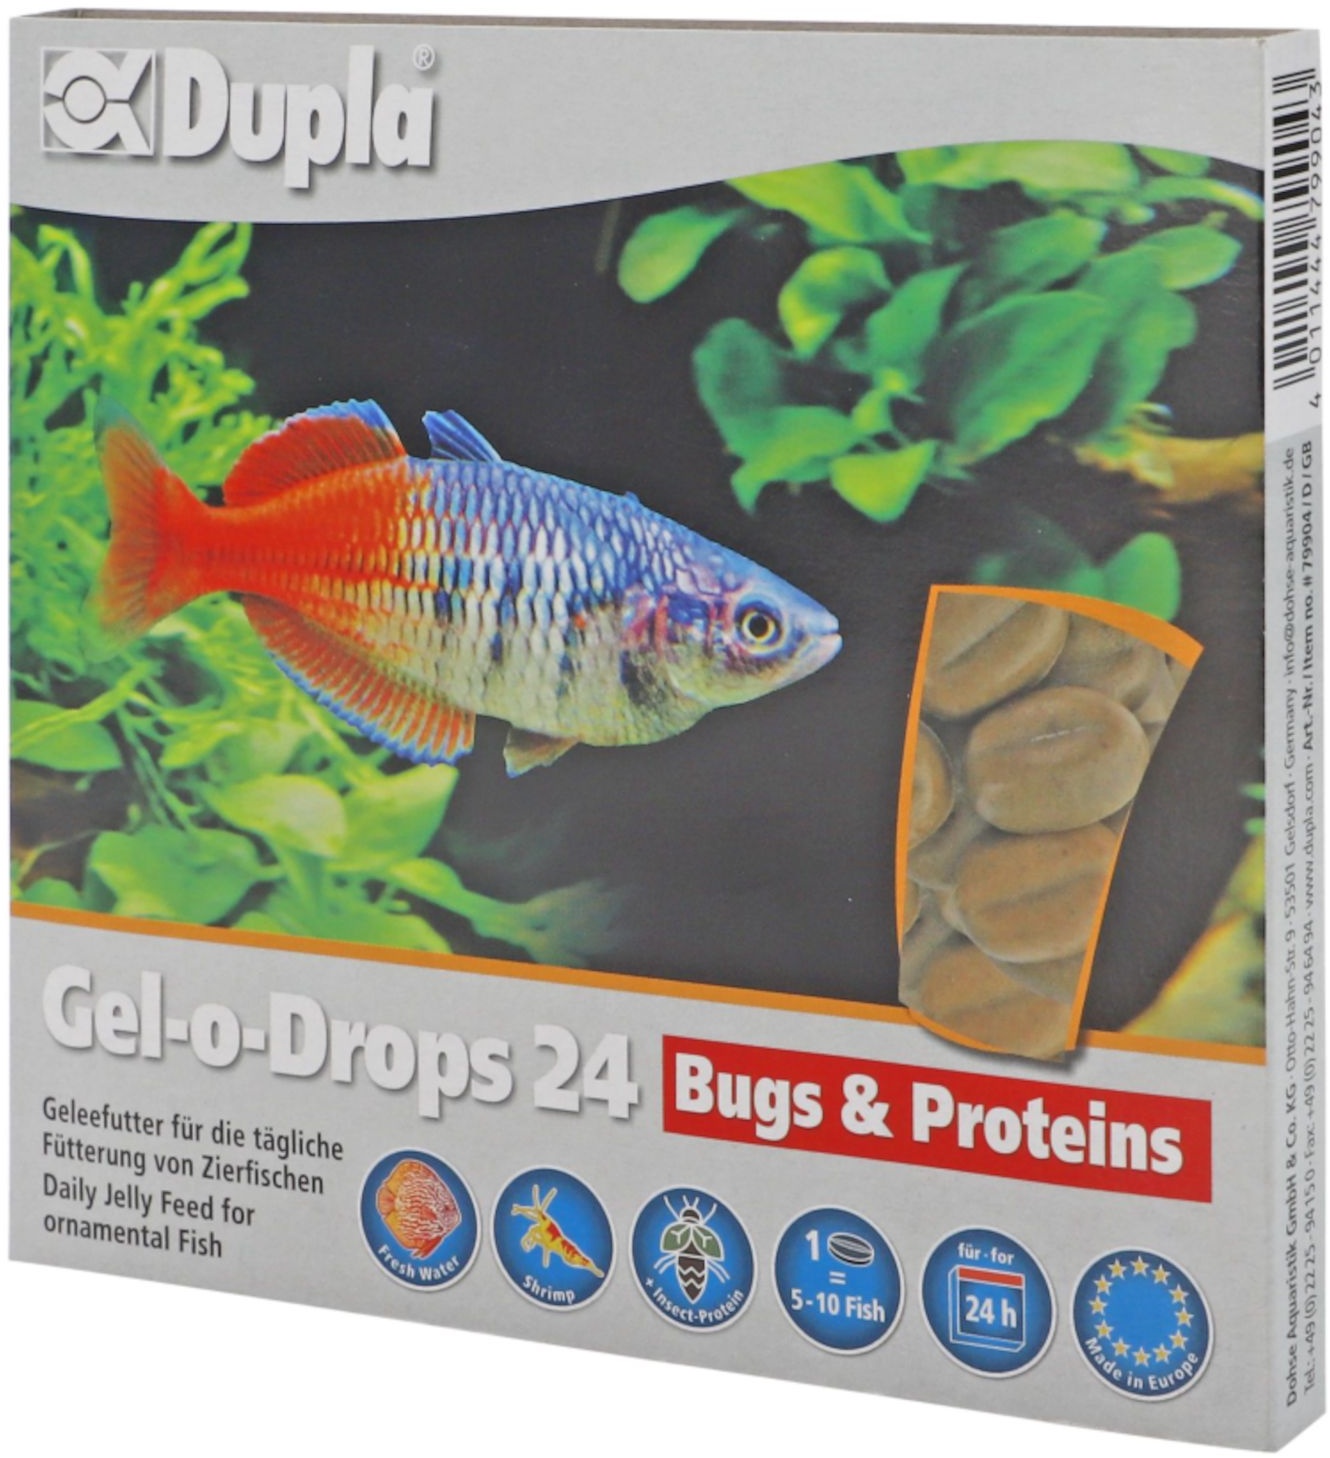 Dupla Aquarienfutter Gel-o-Drops 24 Bugs & Proteins 12x2 g